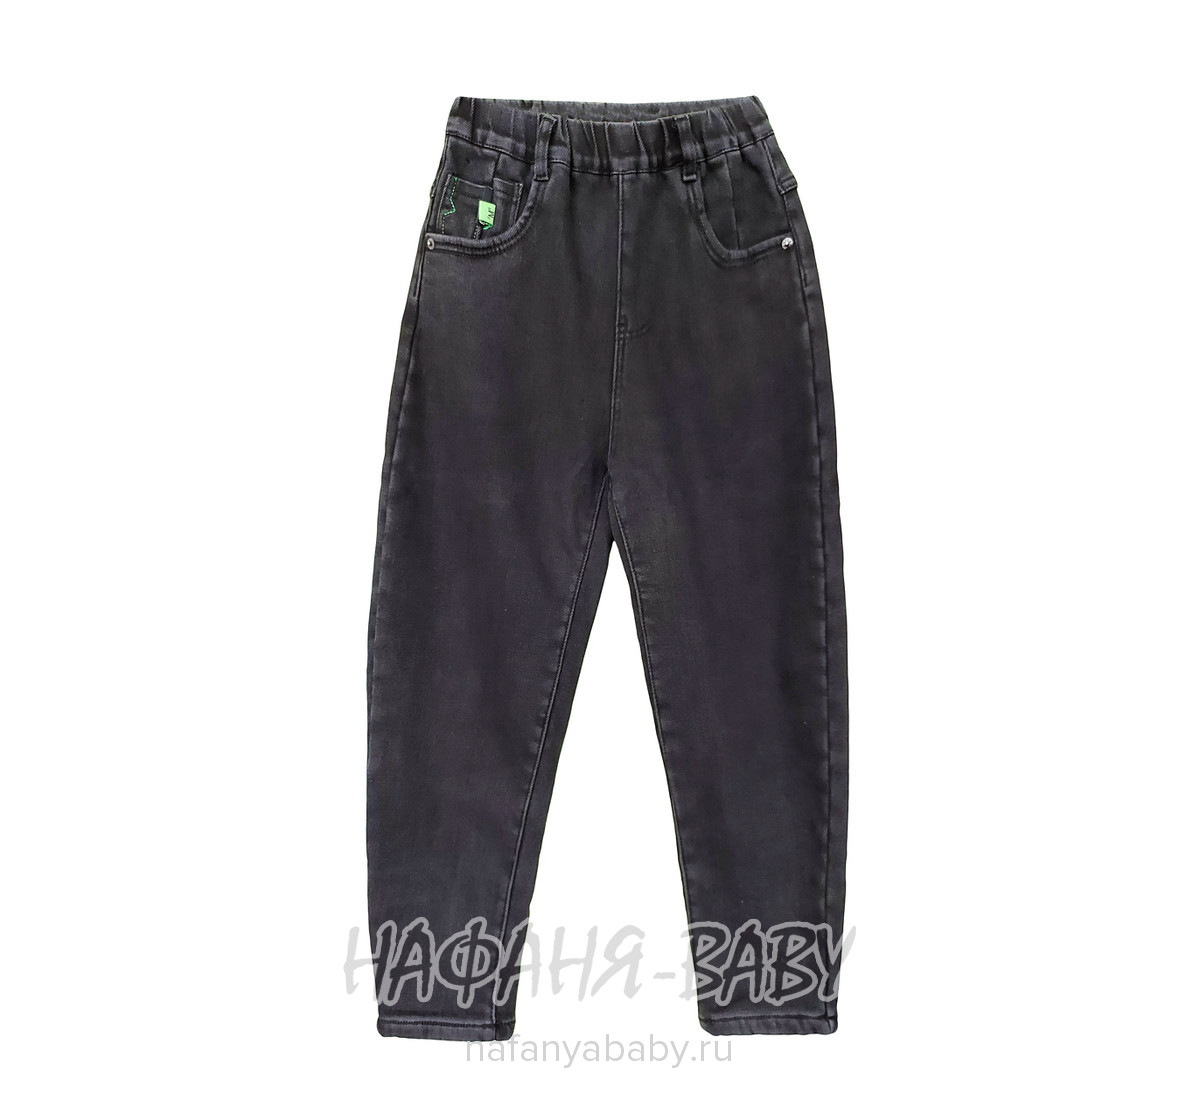 Подростковые теплые джинсы LNYB арт: 85001, 10-15 лет, цвет черный, оптом Китай (Пекин)